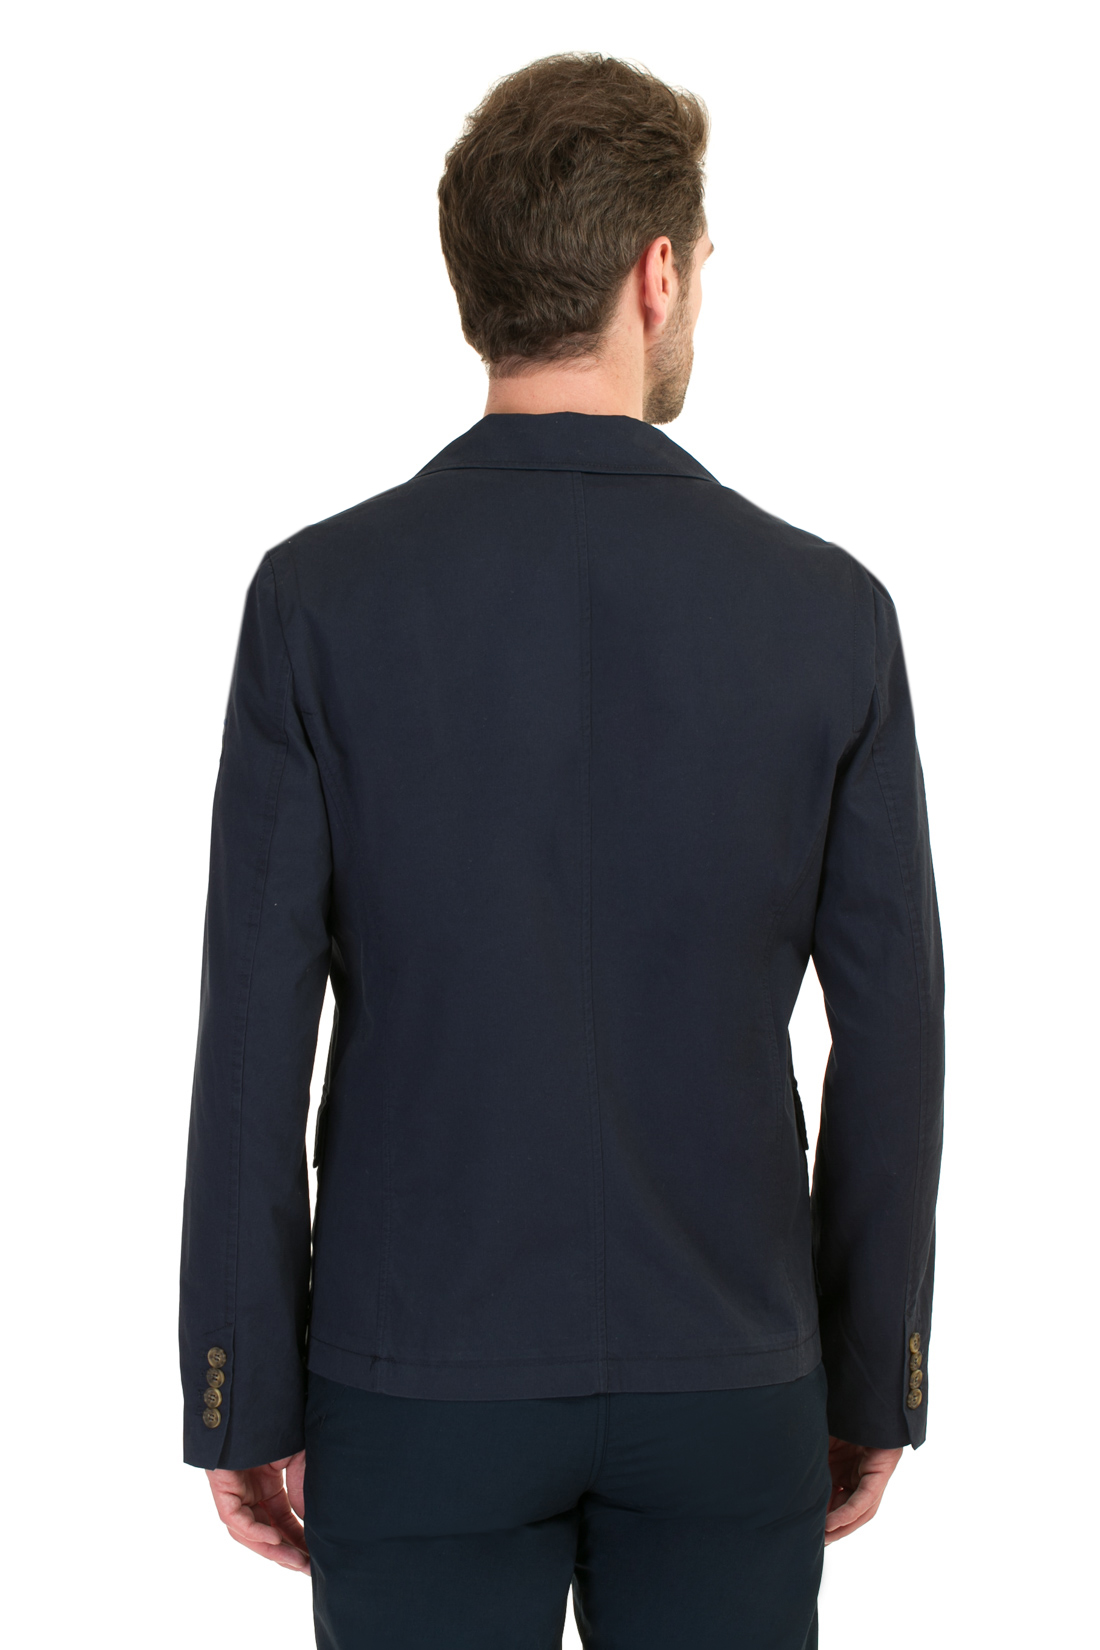 Повседневный пиджак (арт. baon B627004), размер M, цвет синий Повседневный пиджак (арт. baon B627004) - фото 2